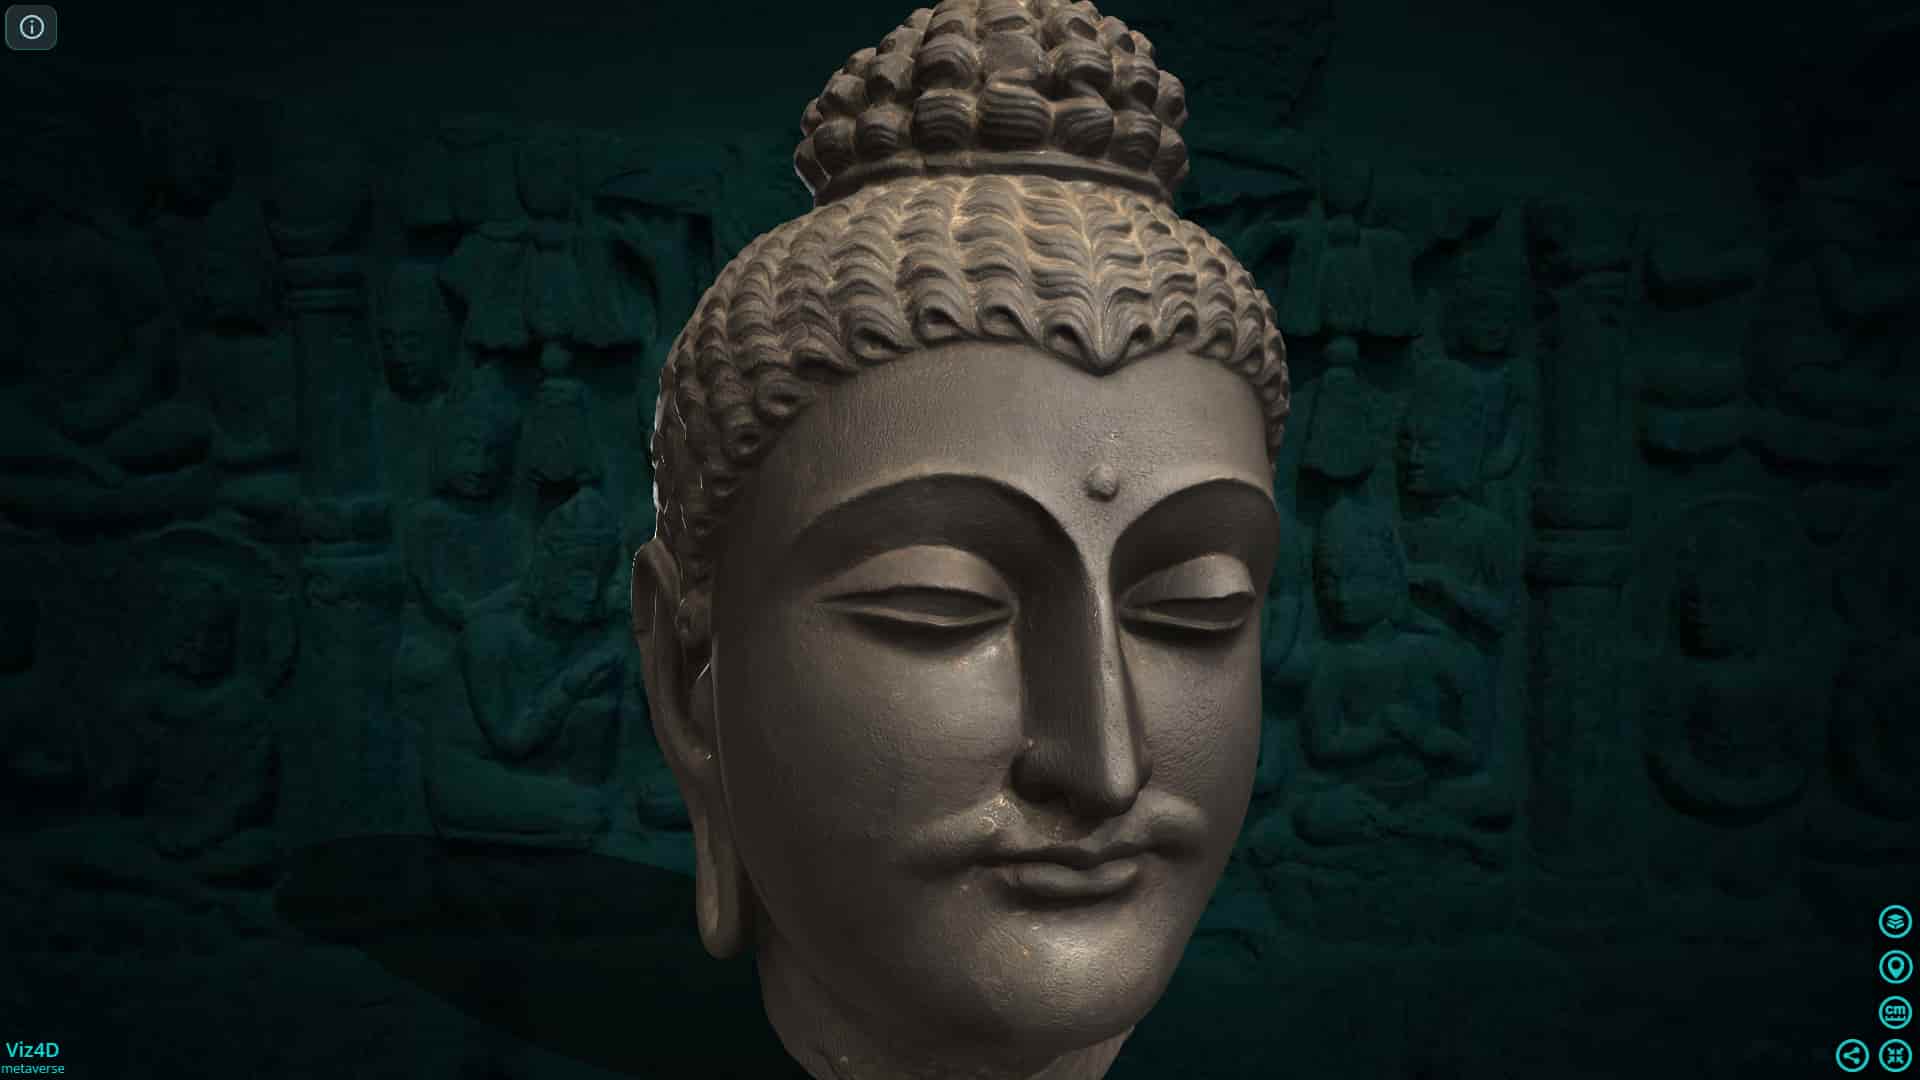 Chân dung đức Phật ở Pakistan - Art Institute of Chicago